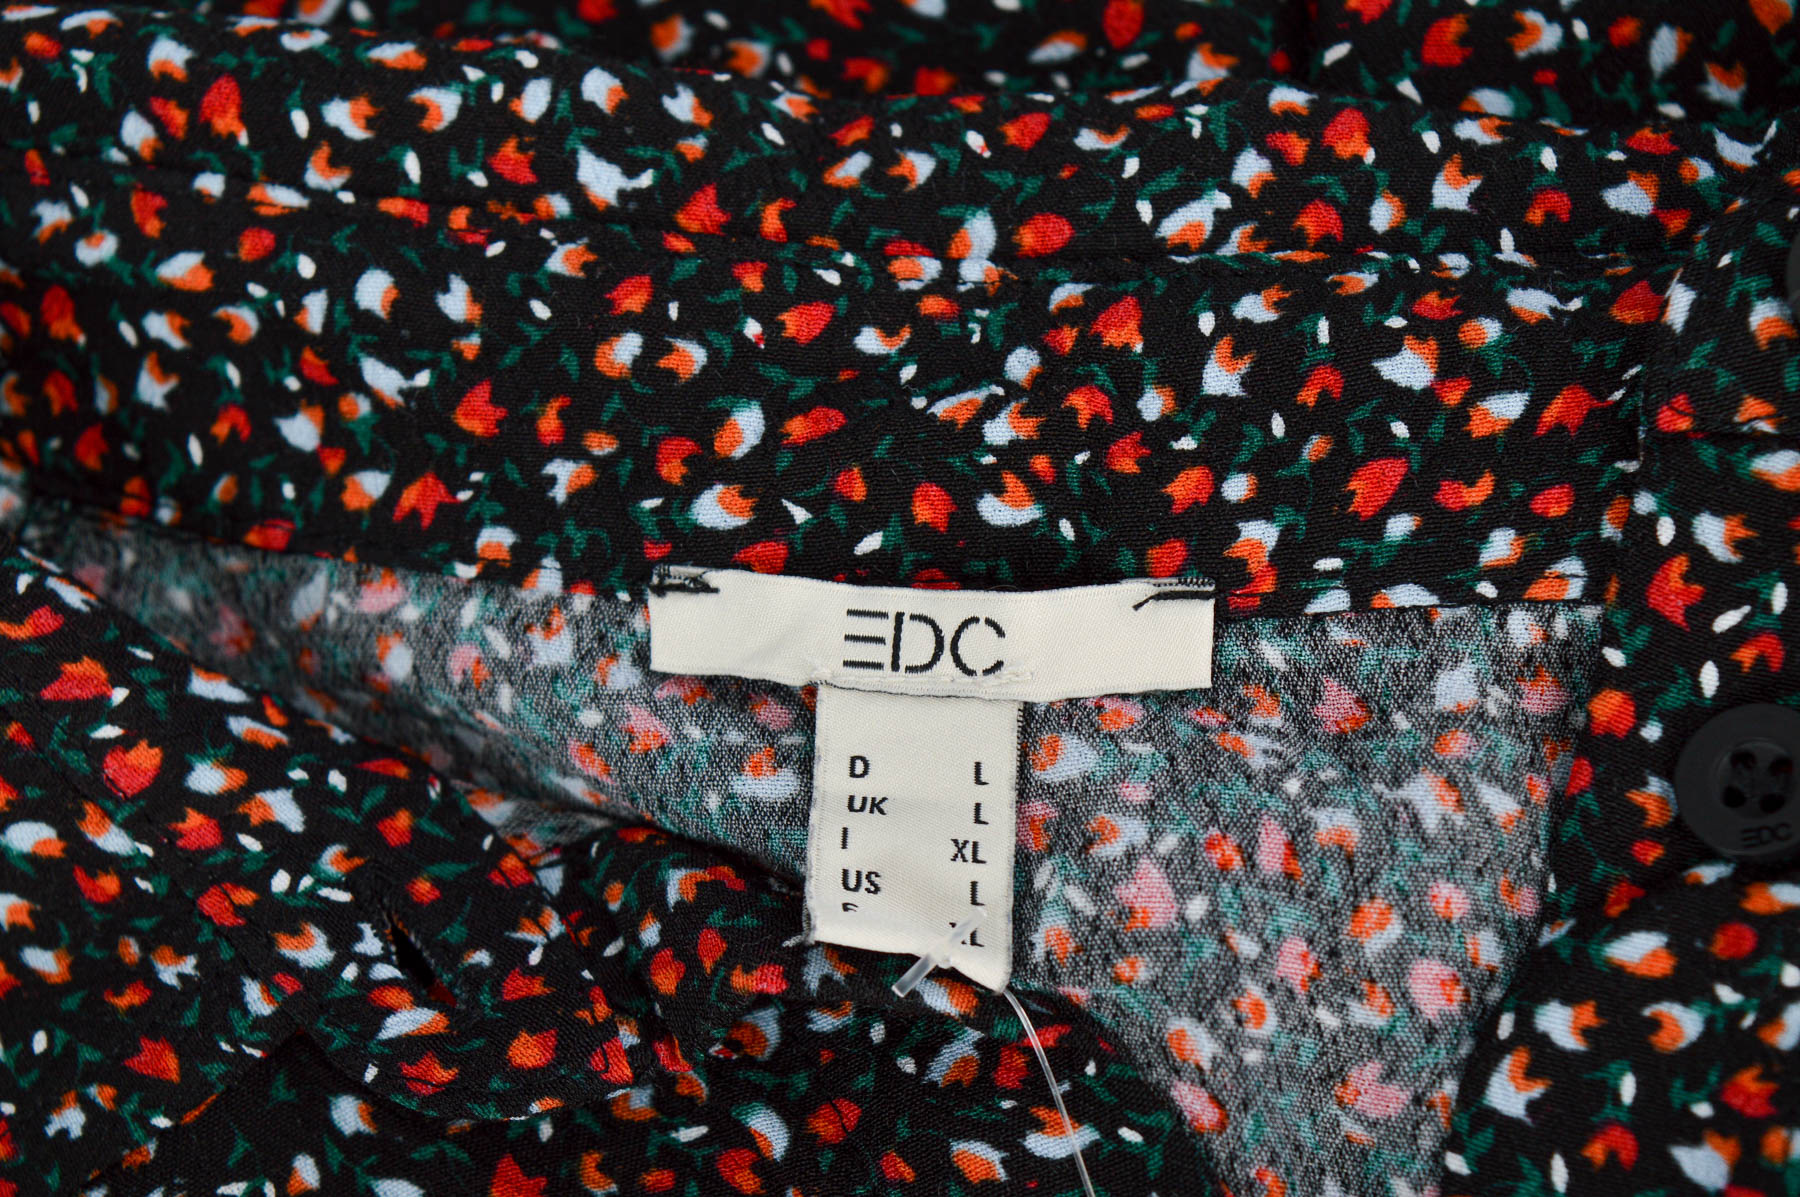 Women's shirt - Edc - 2